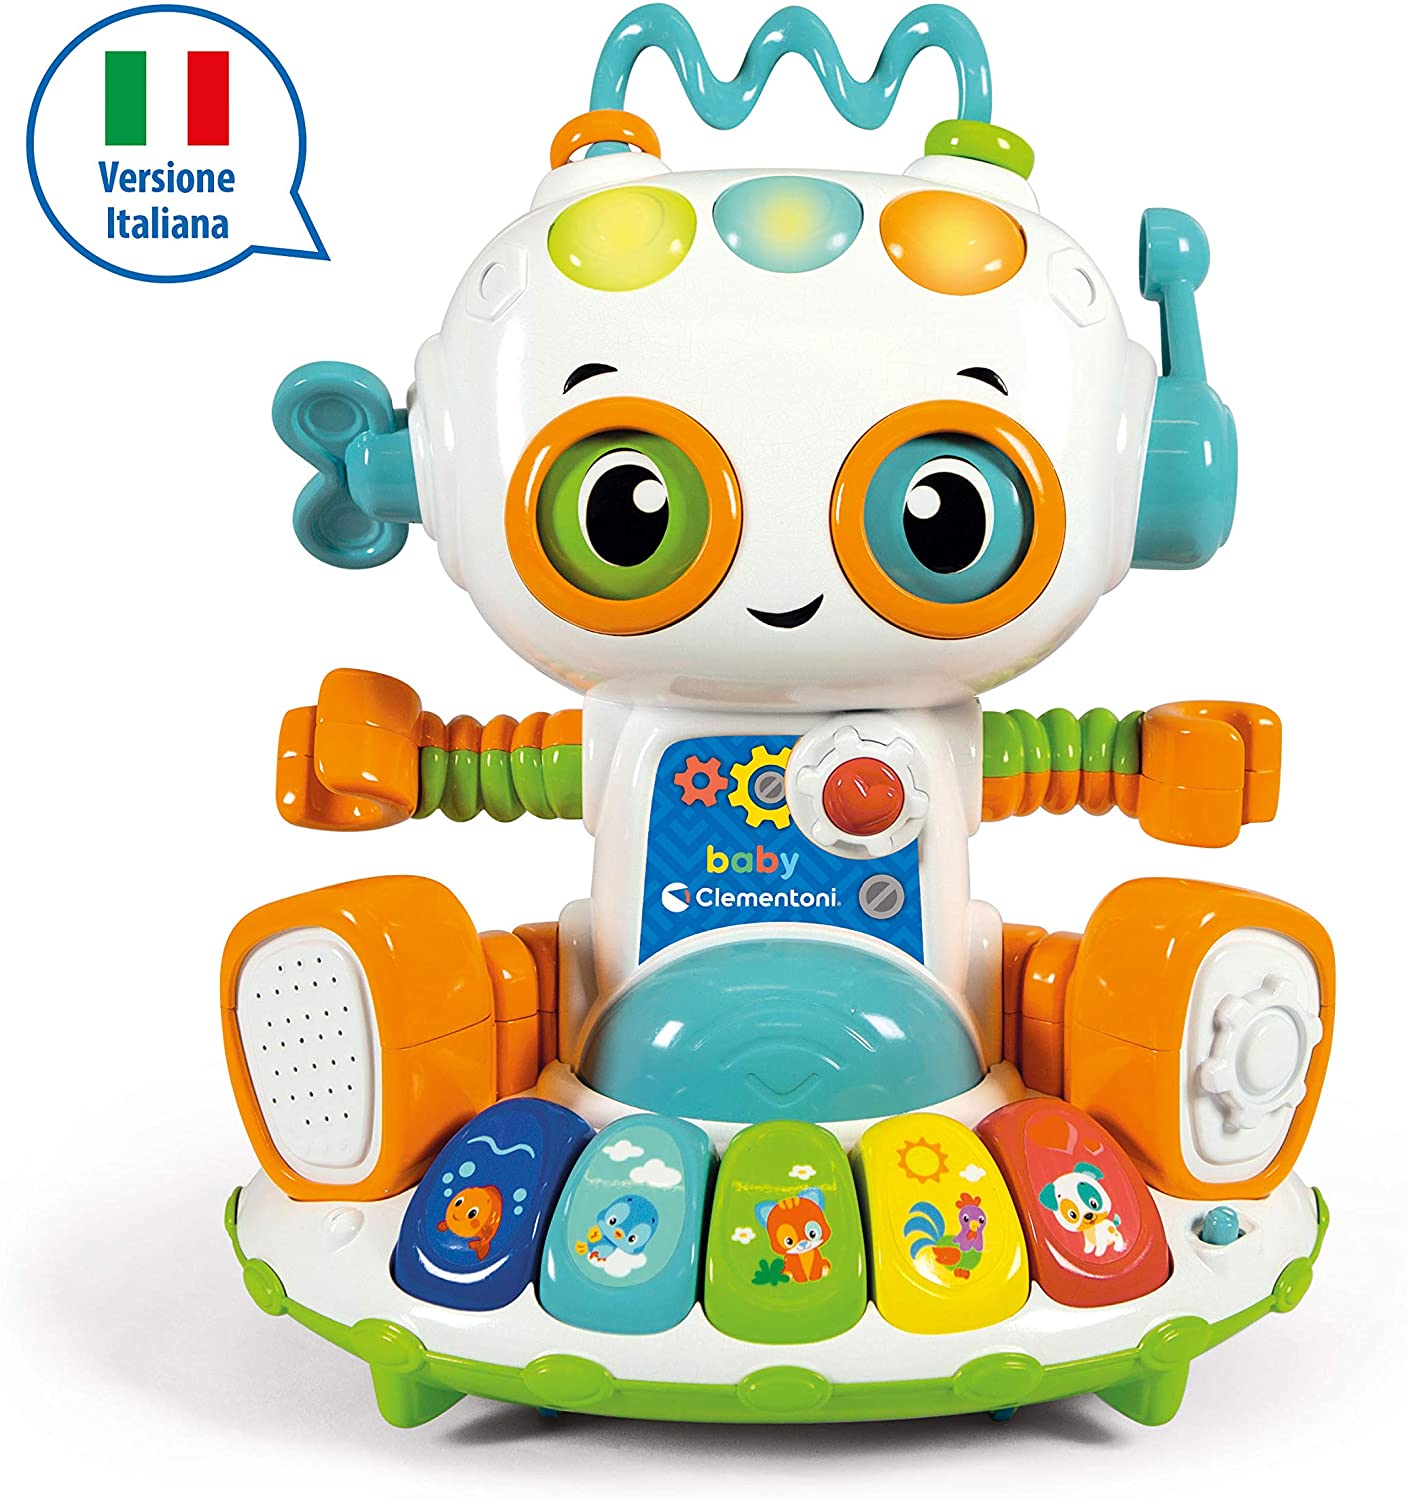 Baby Clementoni - Baby Robot tante attività in movimento - Italian Edition